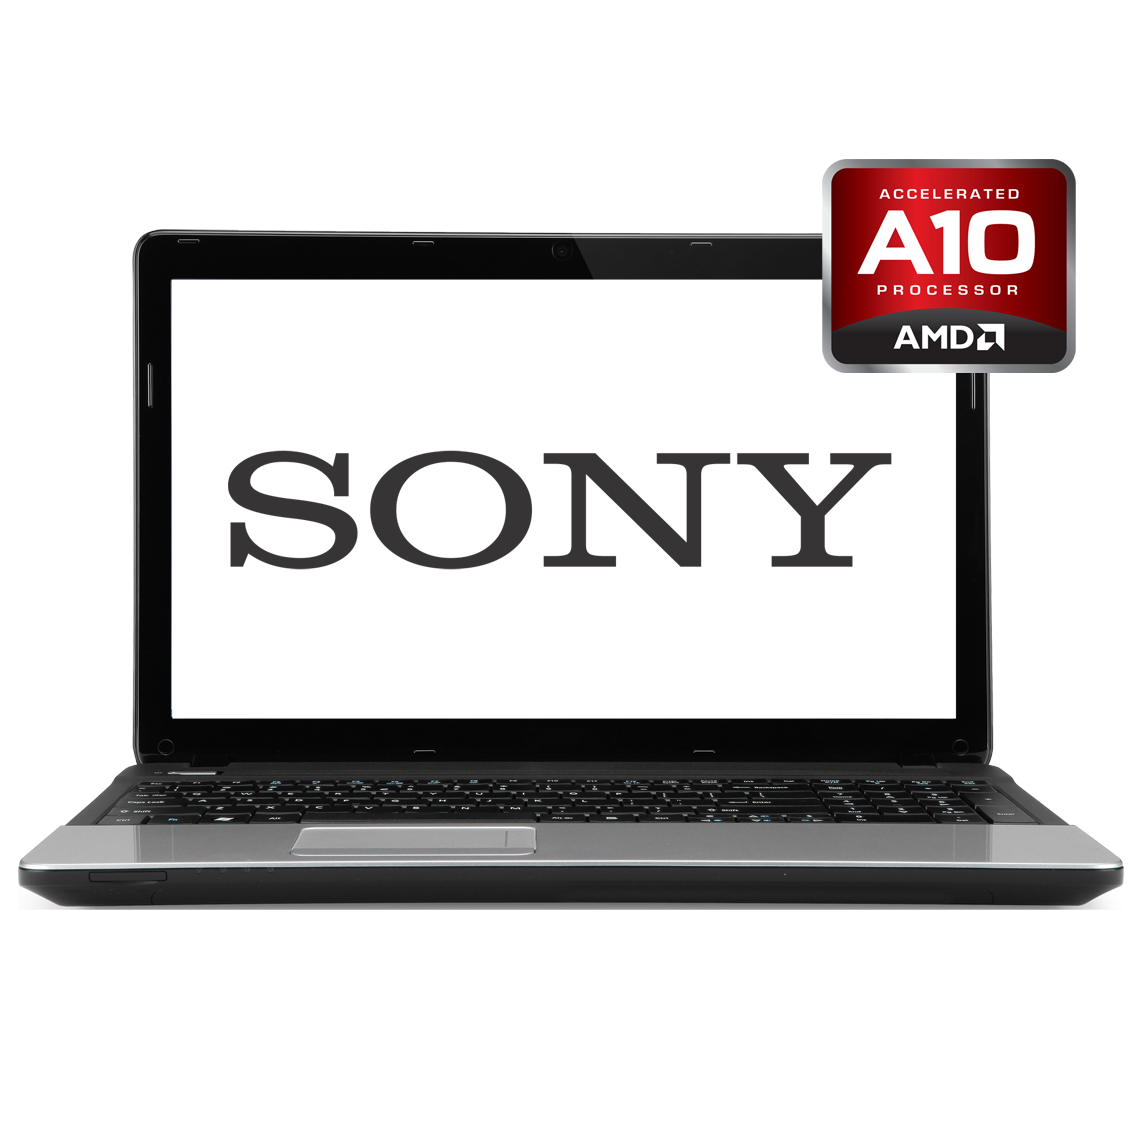 Sony - 15.6 inch AMD A10